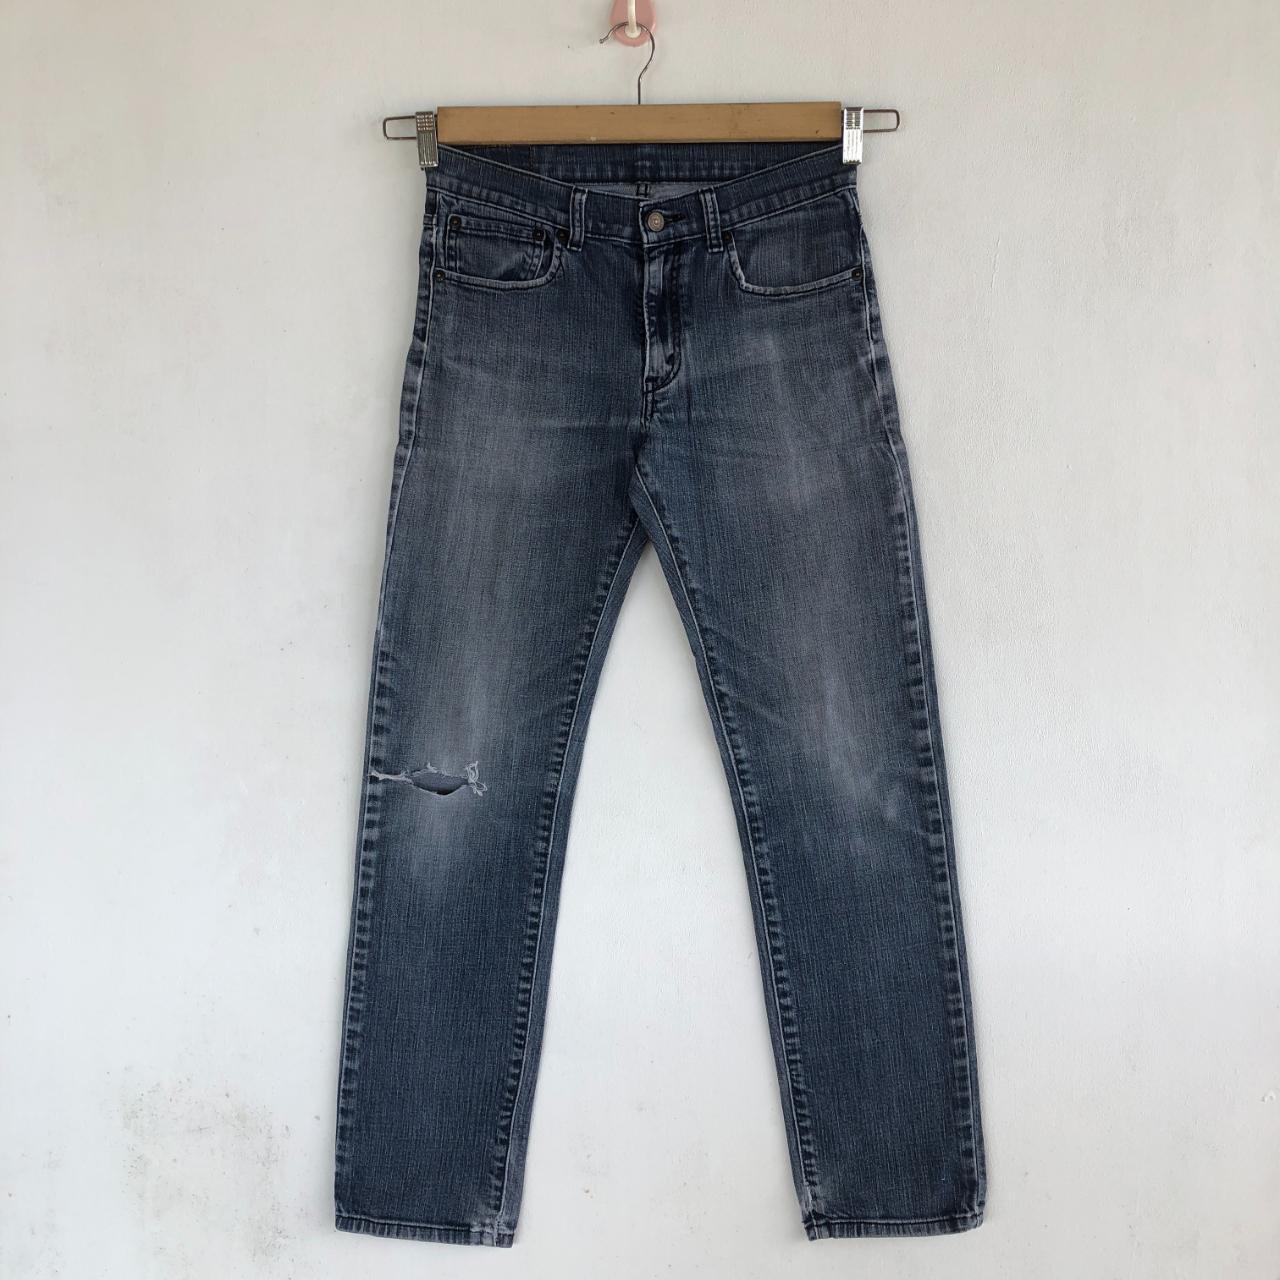 Vintage Levi's Jeans Skinny Distressed Levis 510... - Depop